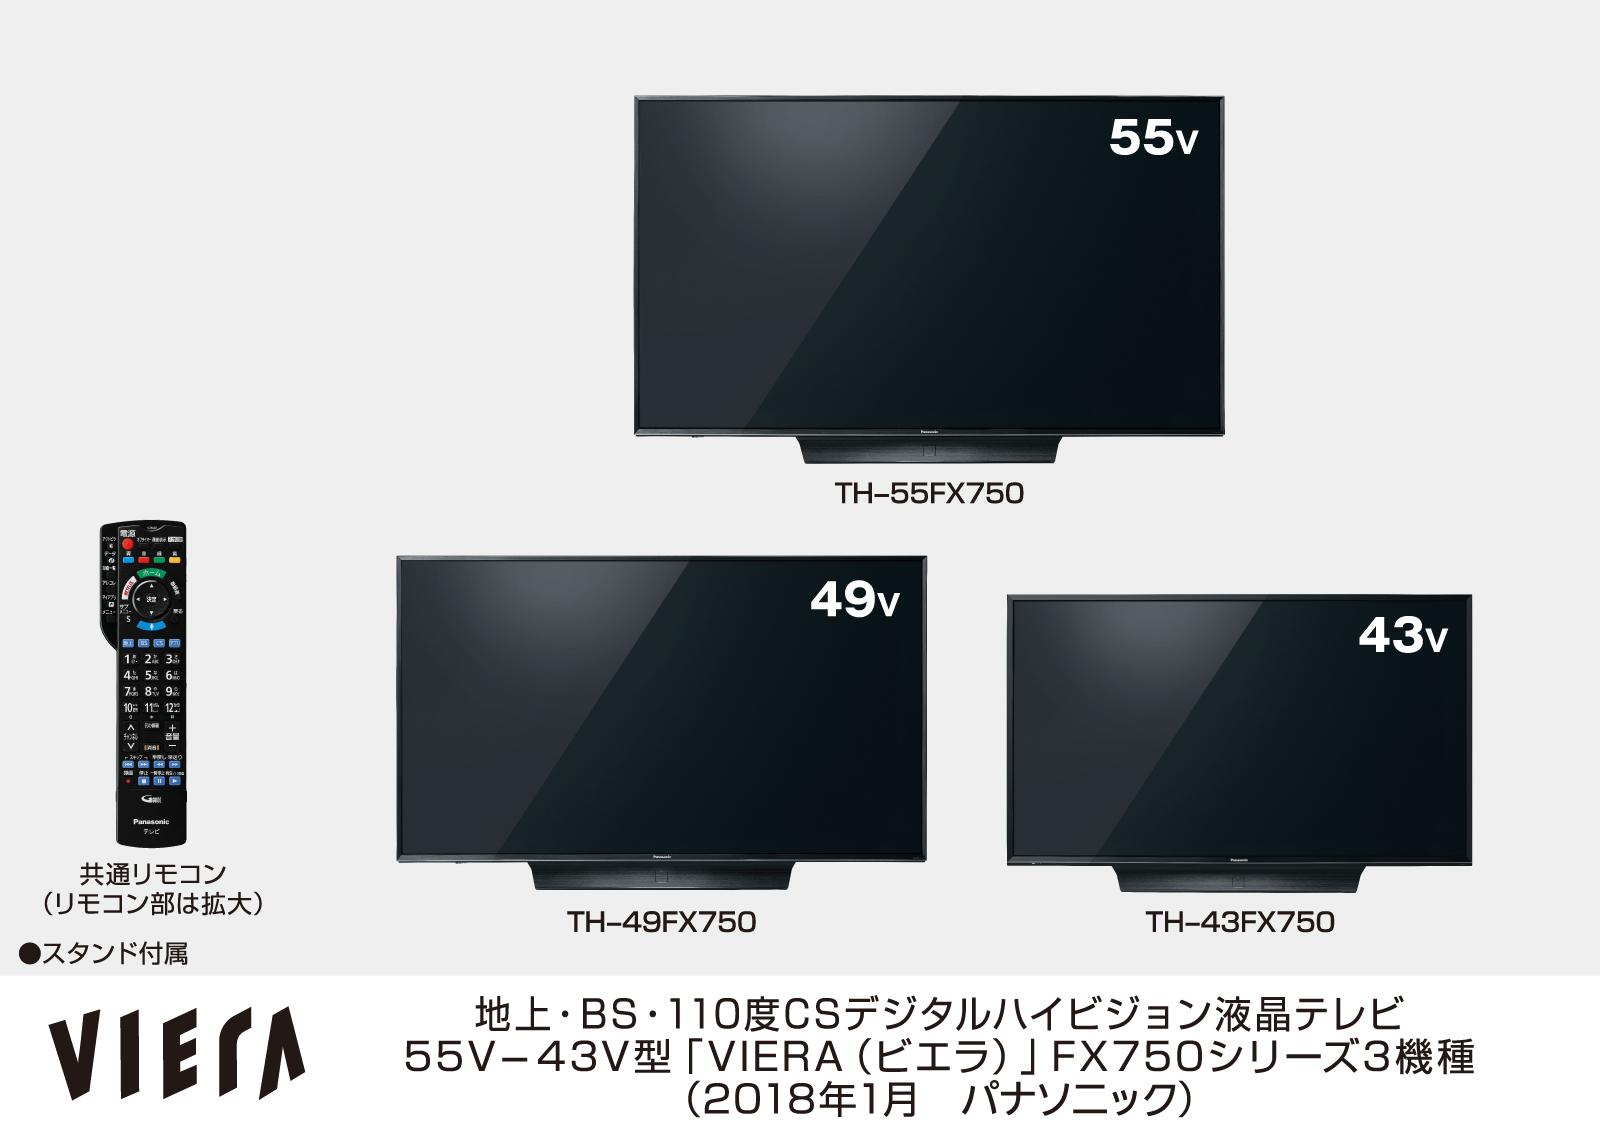 地上・BS・110度CSデジタルハイビジョン液晶テレビ55V-43V型「VIERA（ビエラ）」 FX750シリーズ3機種、TH-55FX750、TH-49FX750、TH-43FX750